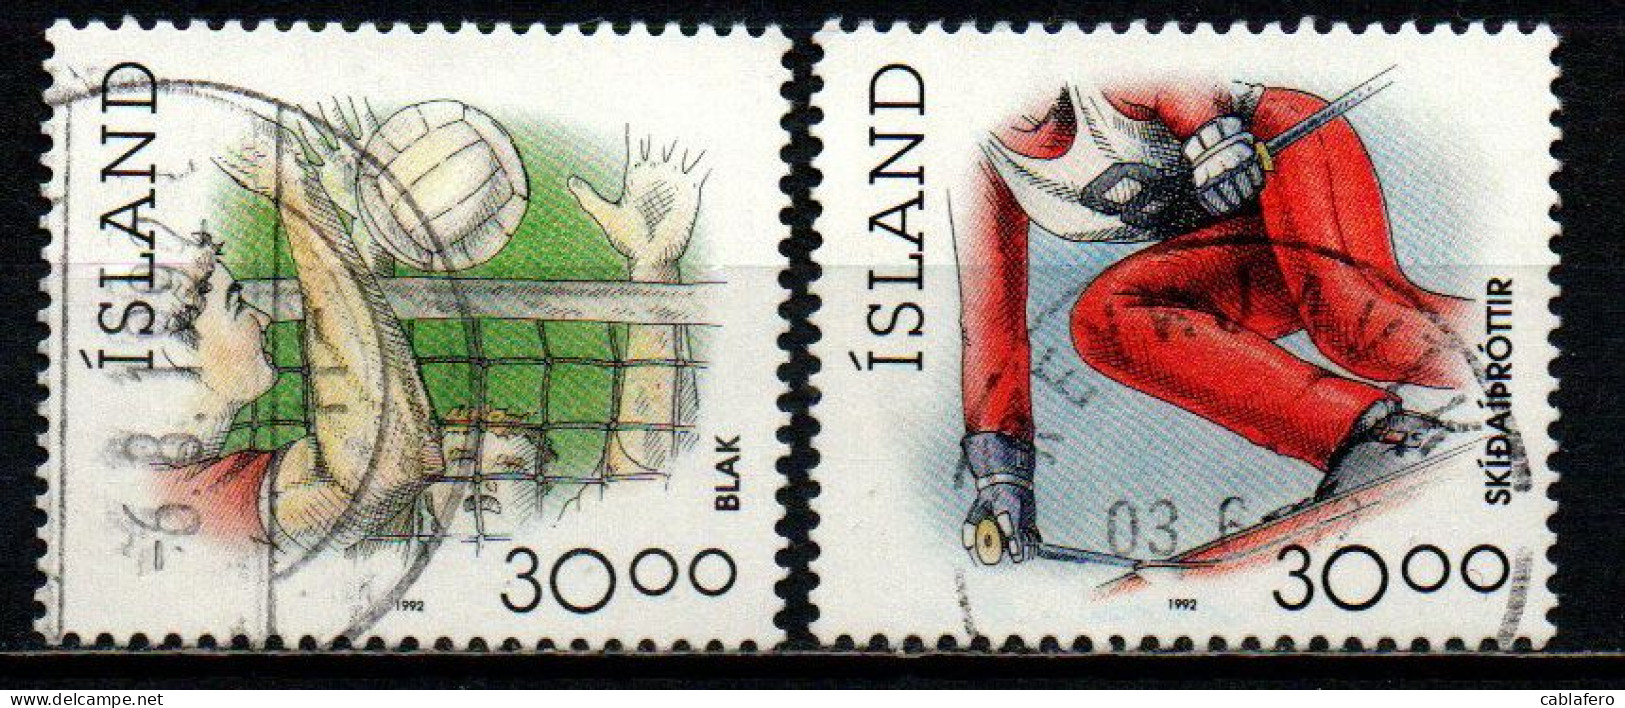 ISLANDA - 1992 - SPORT: PALLAVOLO E SCI ALPINO - USATI - Used Stamps